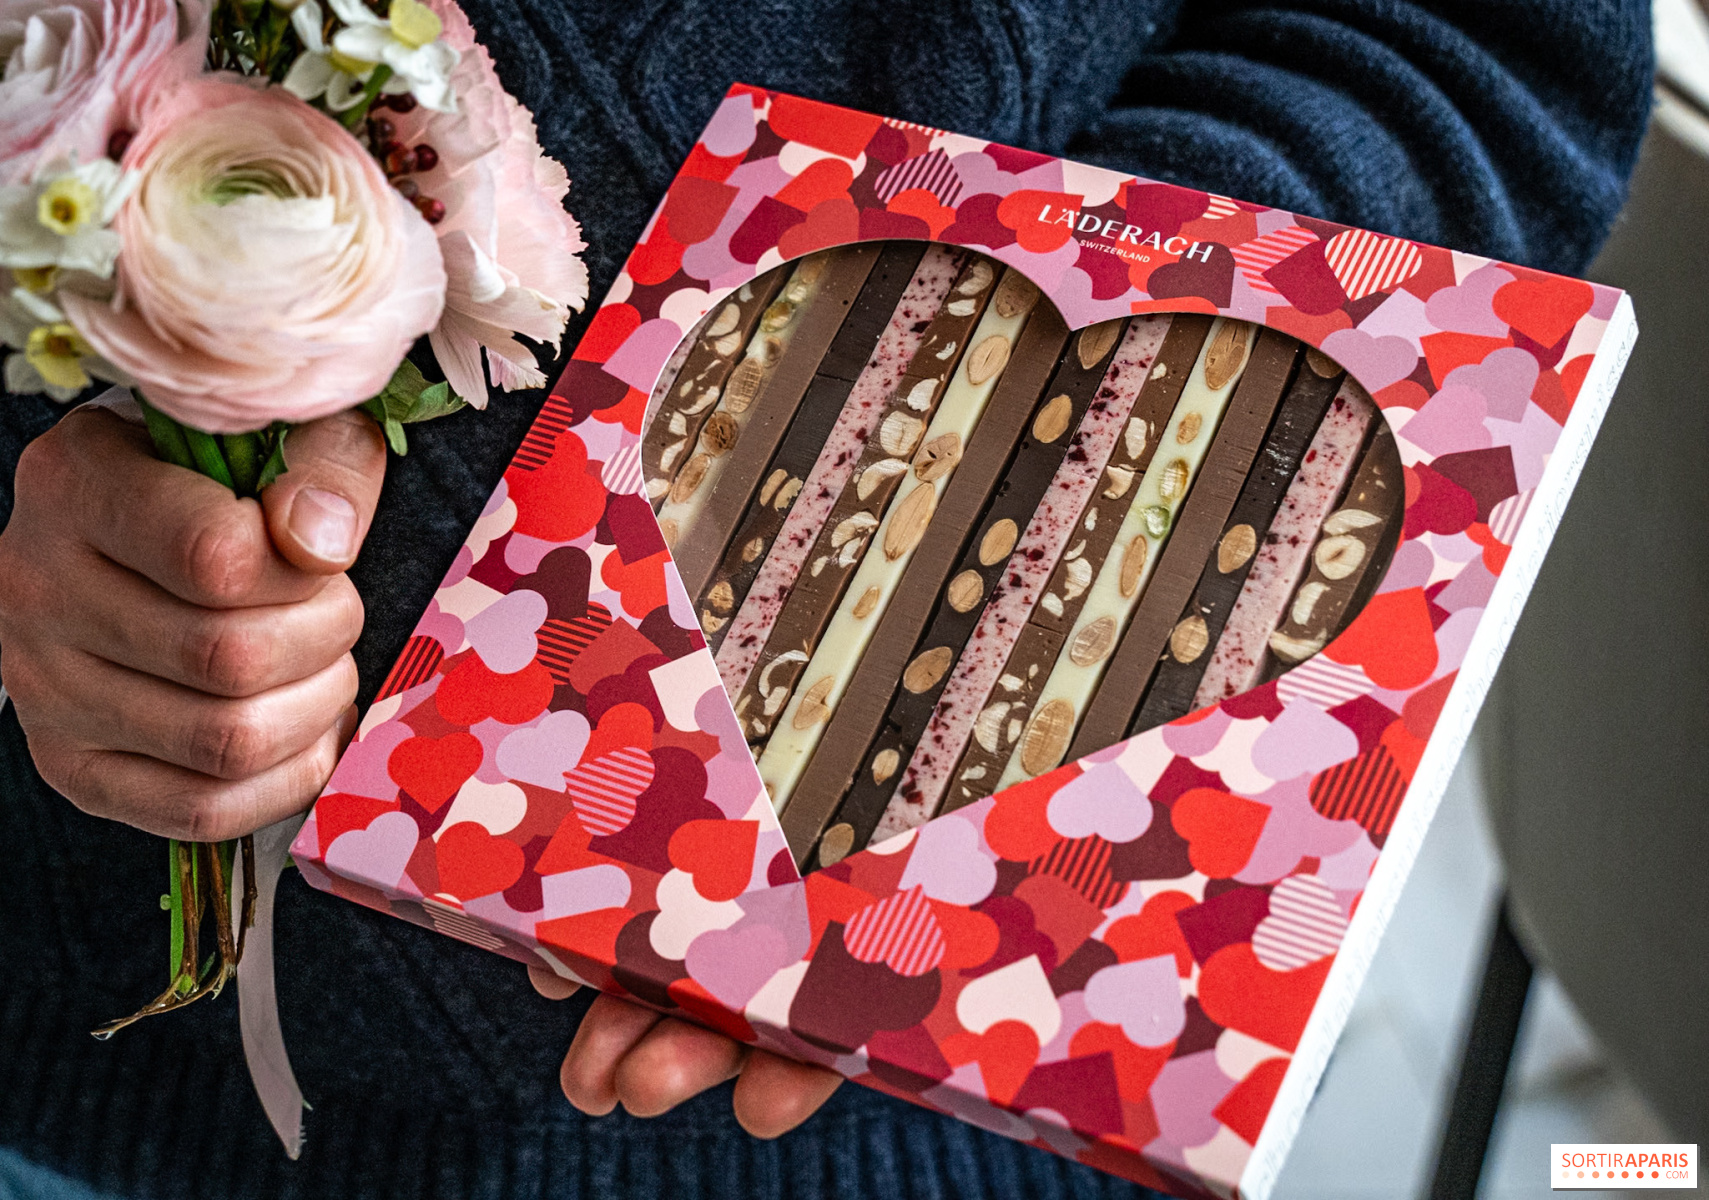 Läderach fête sa première Saint-Valentin à Paris avec une collection chocolatée exclusive